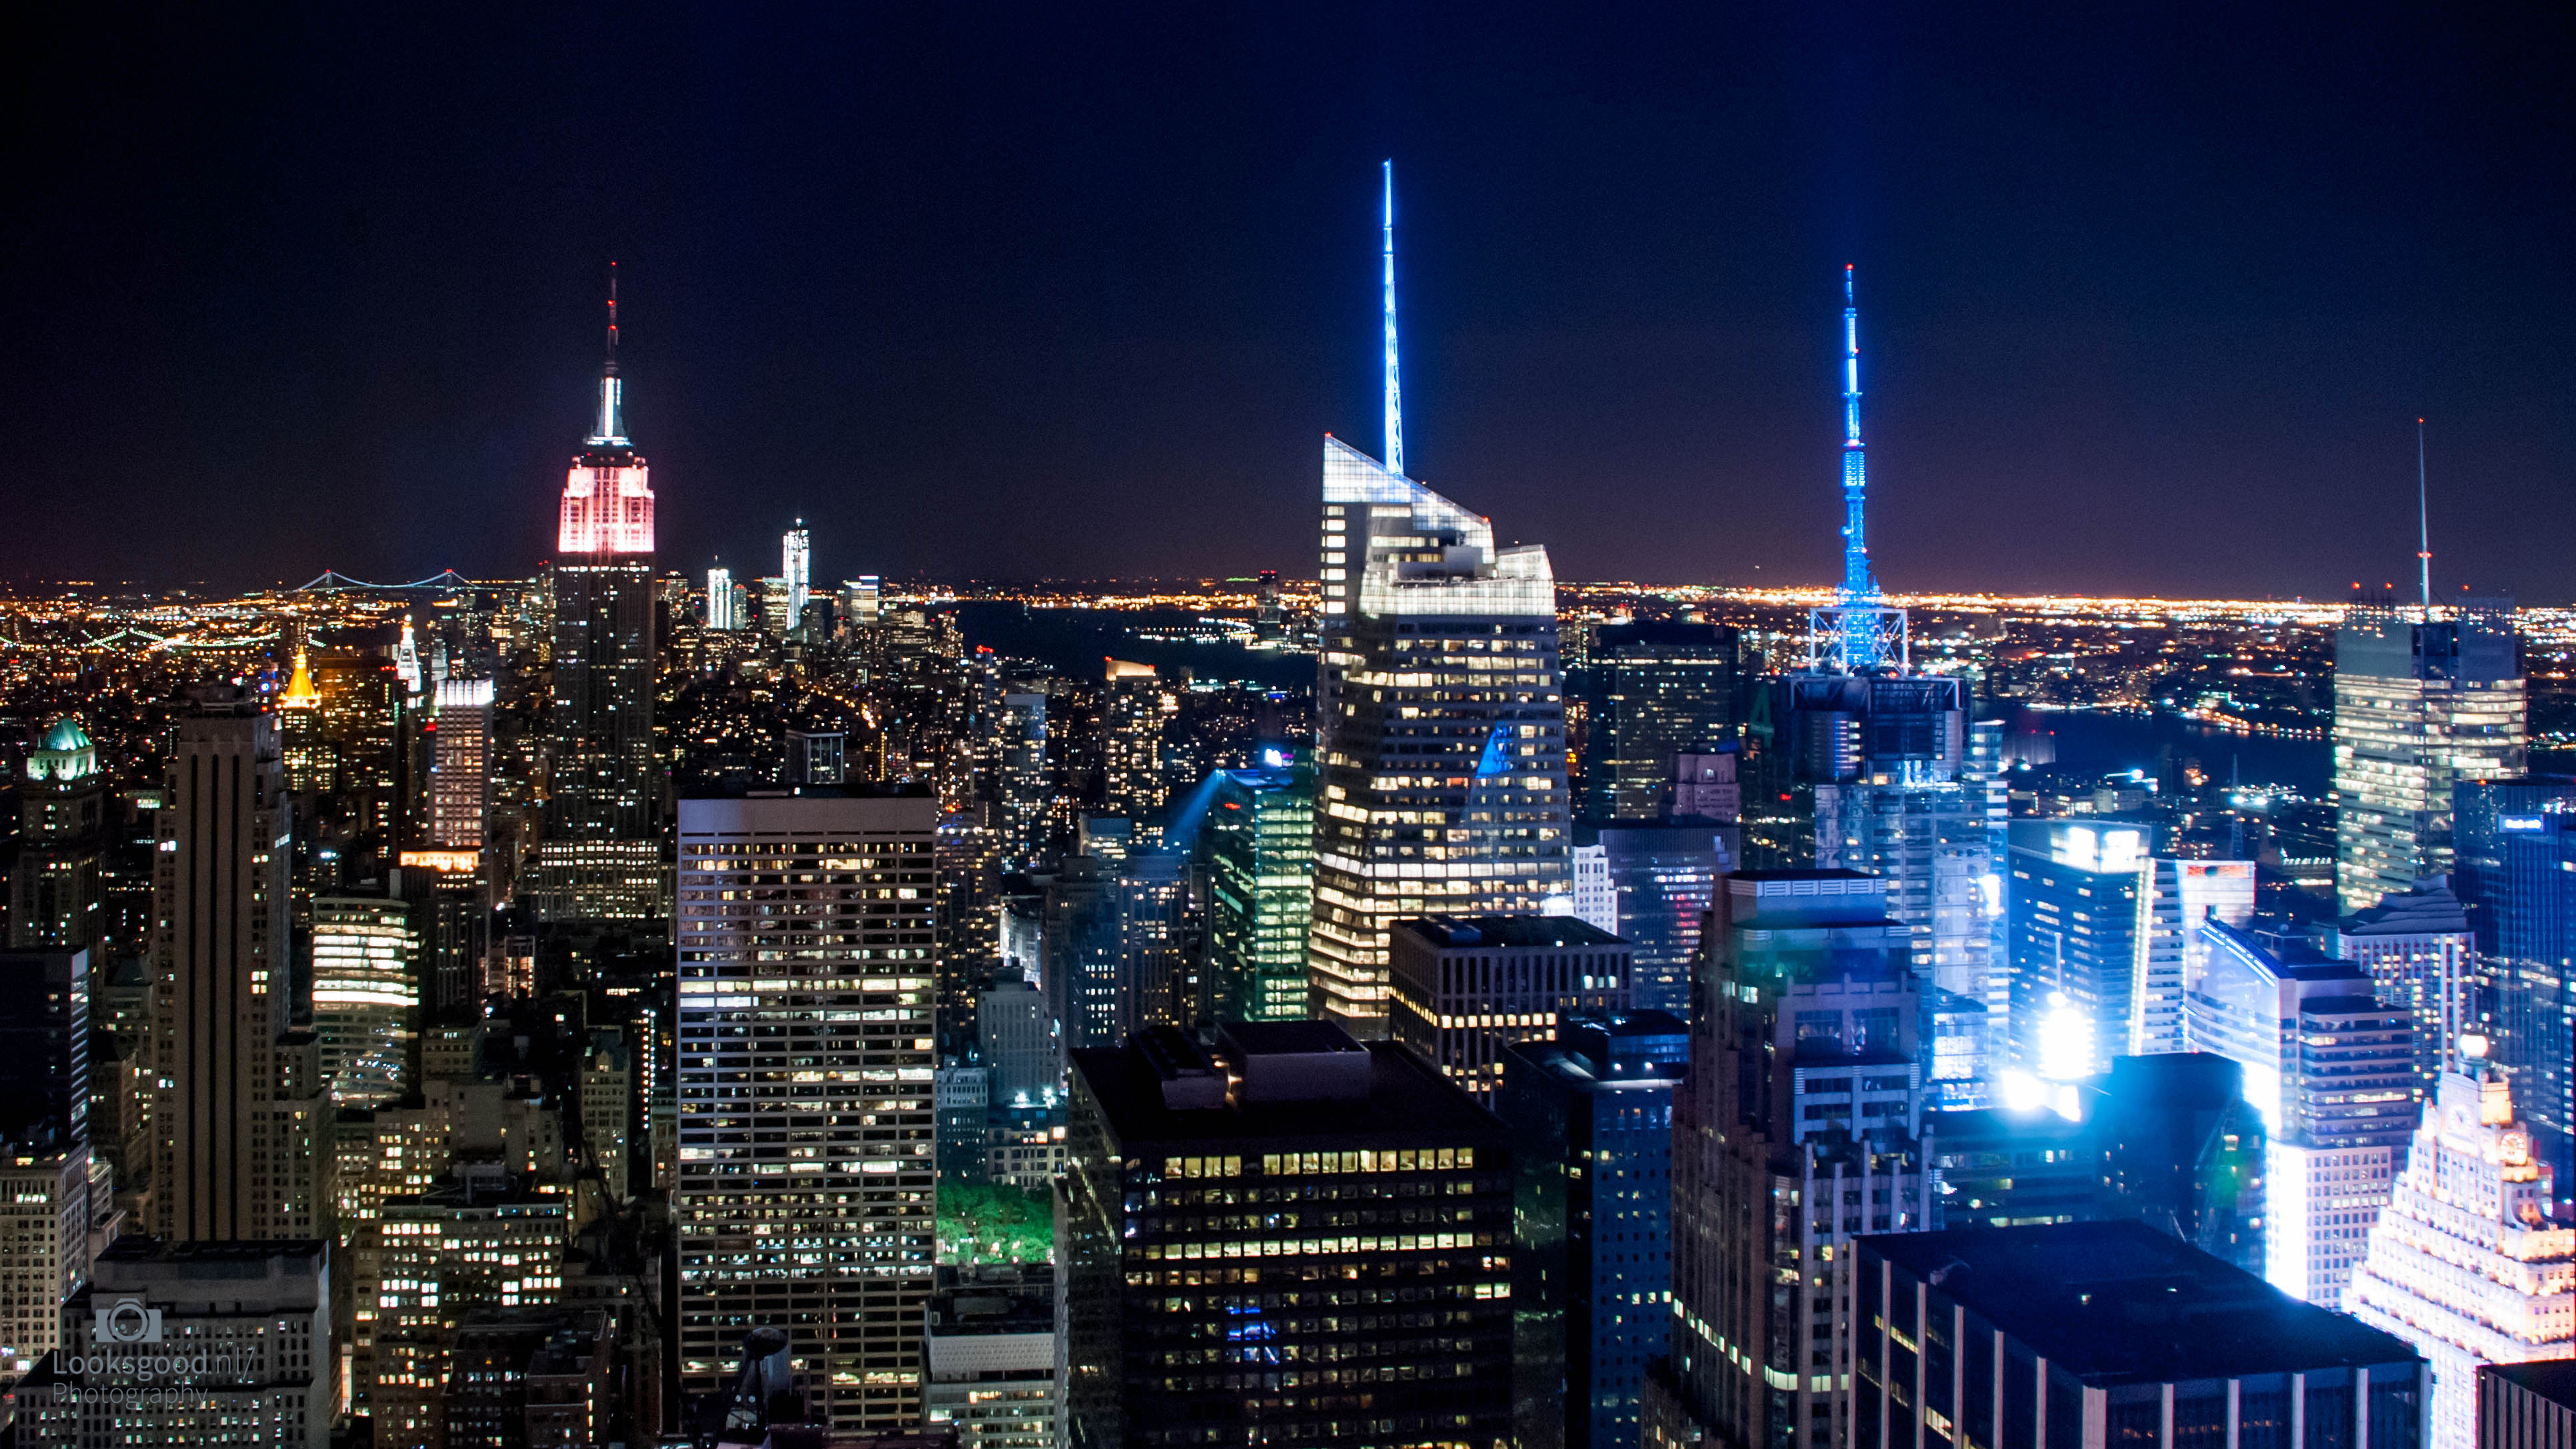 Hình nền New York Skyline ban đêm 4K: Tận hưởng ánh đèn lung linh của thành phố New York vào ban đêm thông qua hình nền New York Skyline ban đêm 4K. Với độ phân giải 4K sắc nét, bạn sẽ được đưa đến một thế giới thần tiên của ánh đèn và dòng người không ngừng chảy qua lại dưới chân đế tòa nhà cao tầng.